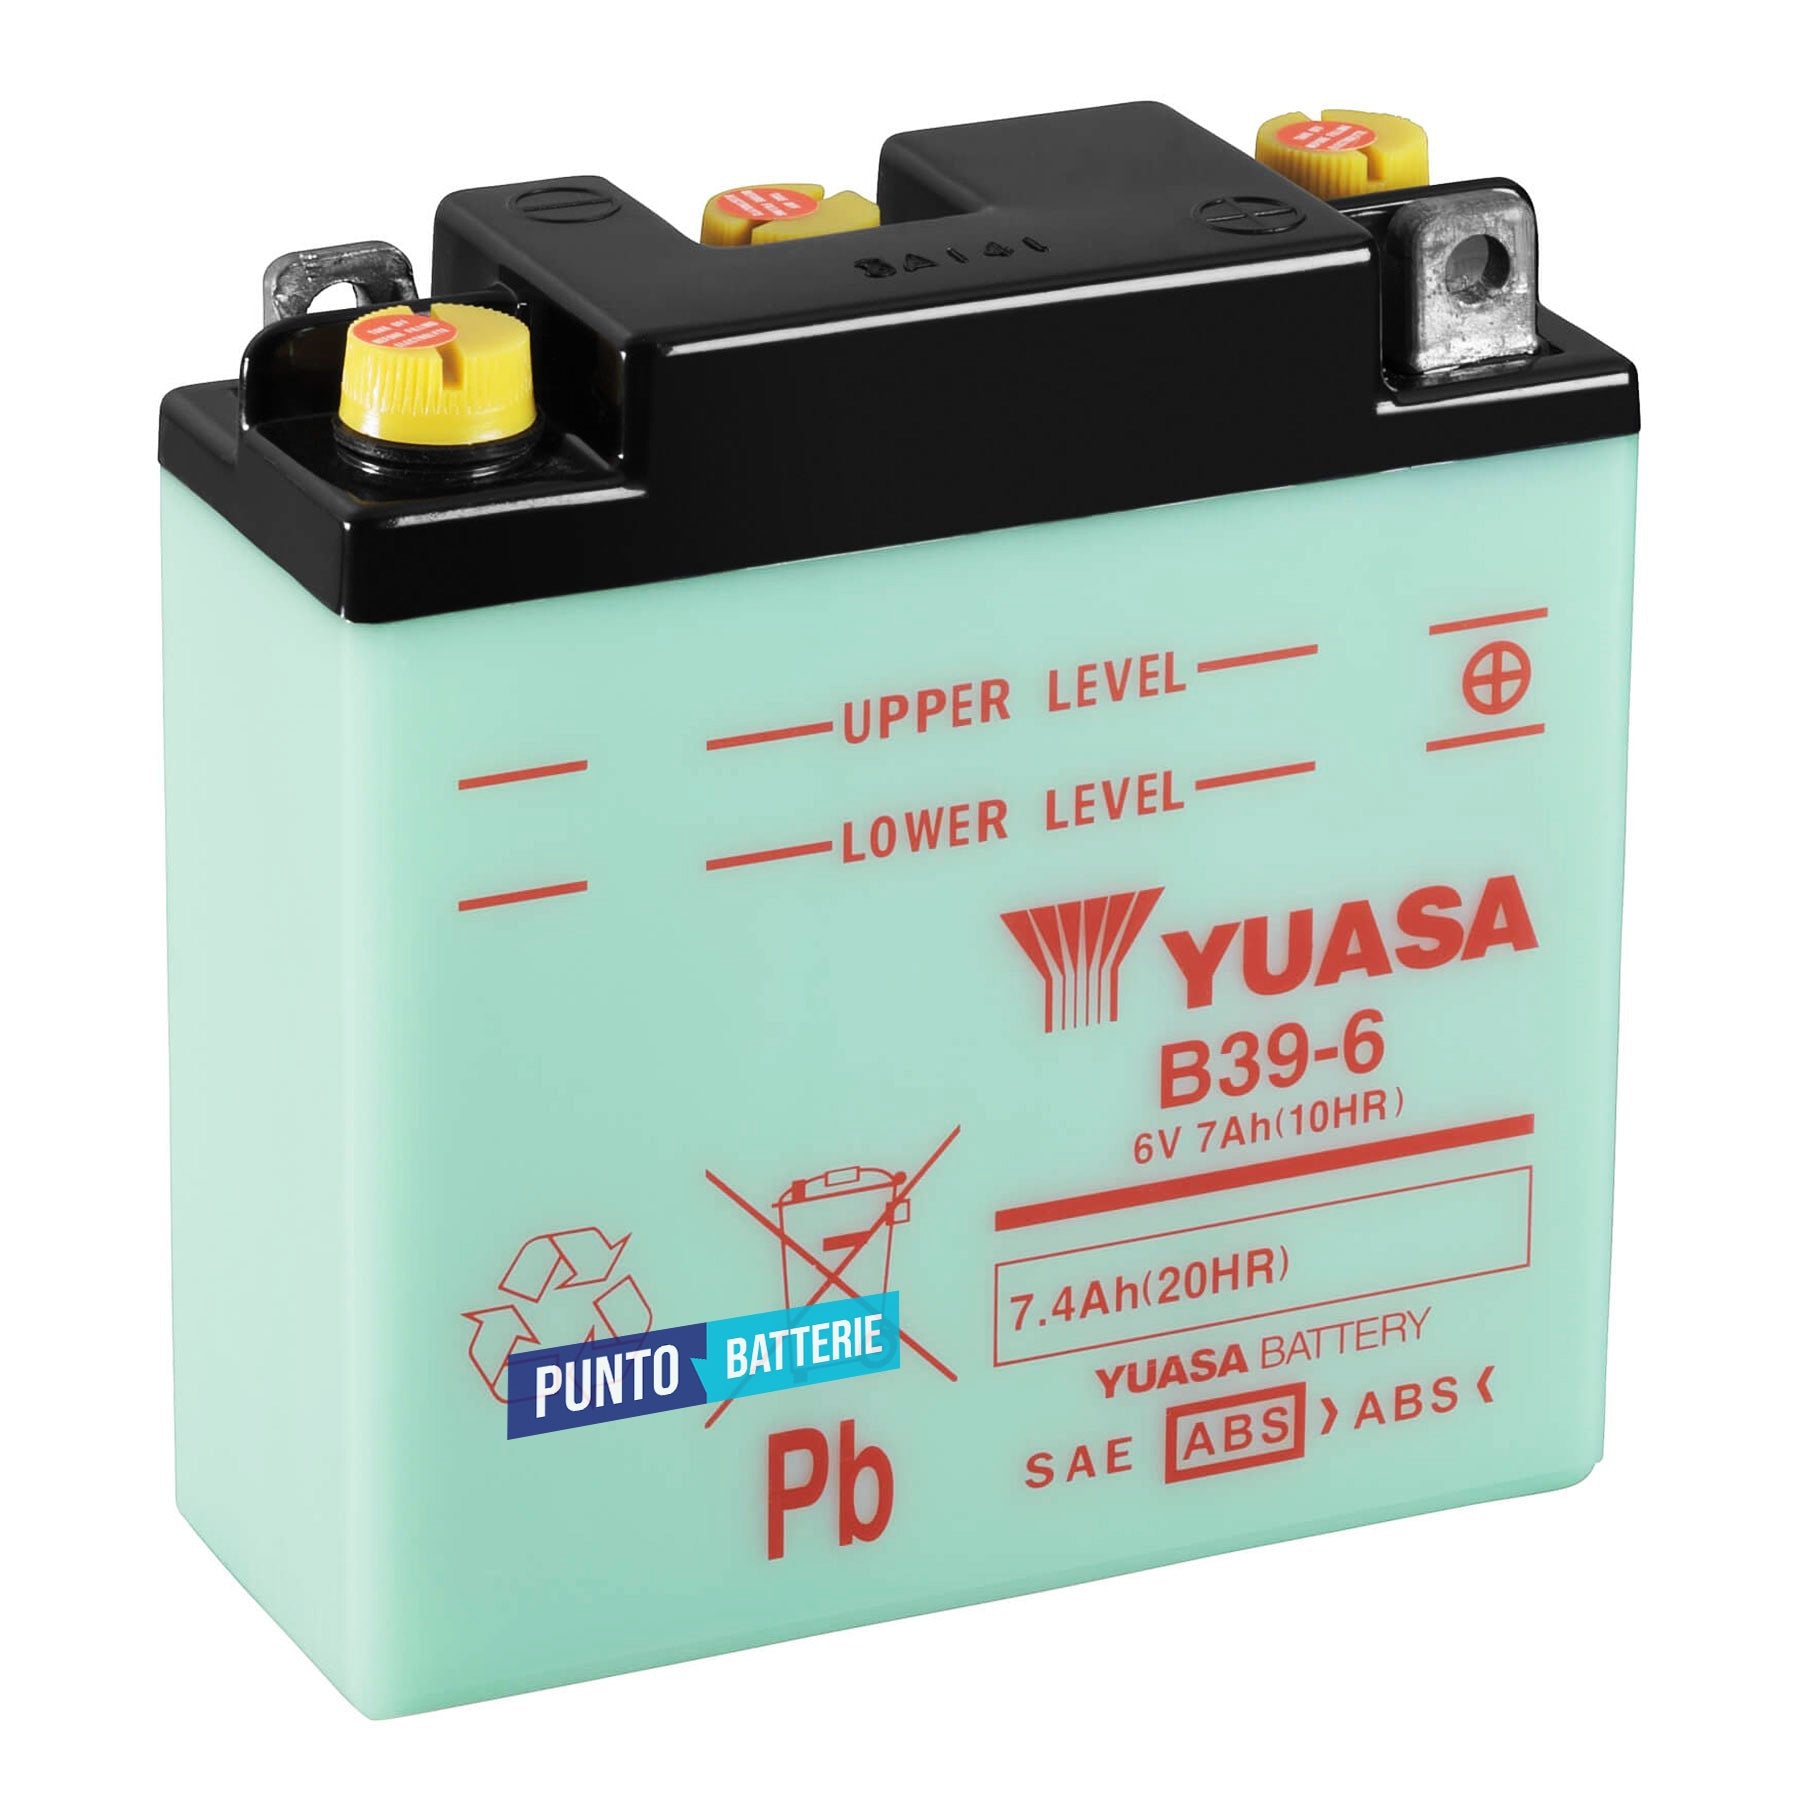 Batteria originale Yuasa Conventional B39-6, dimensioni 126 x 48 x 126, polo positivo a destra, 6 volt, 7 amperora. Batteria per moto, scooter e powersport.